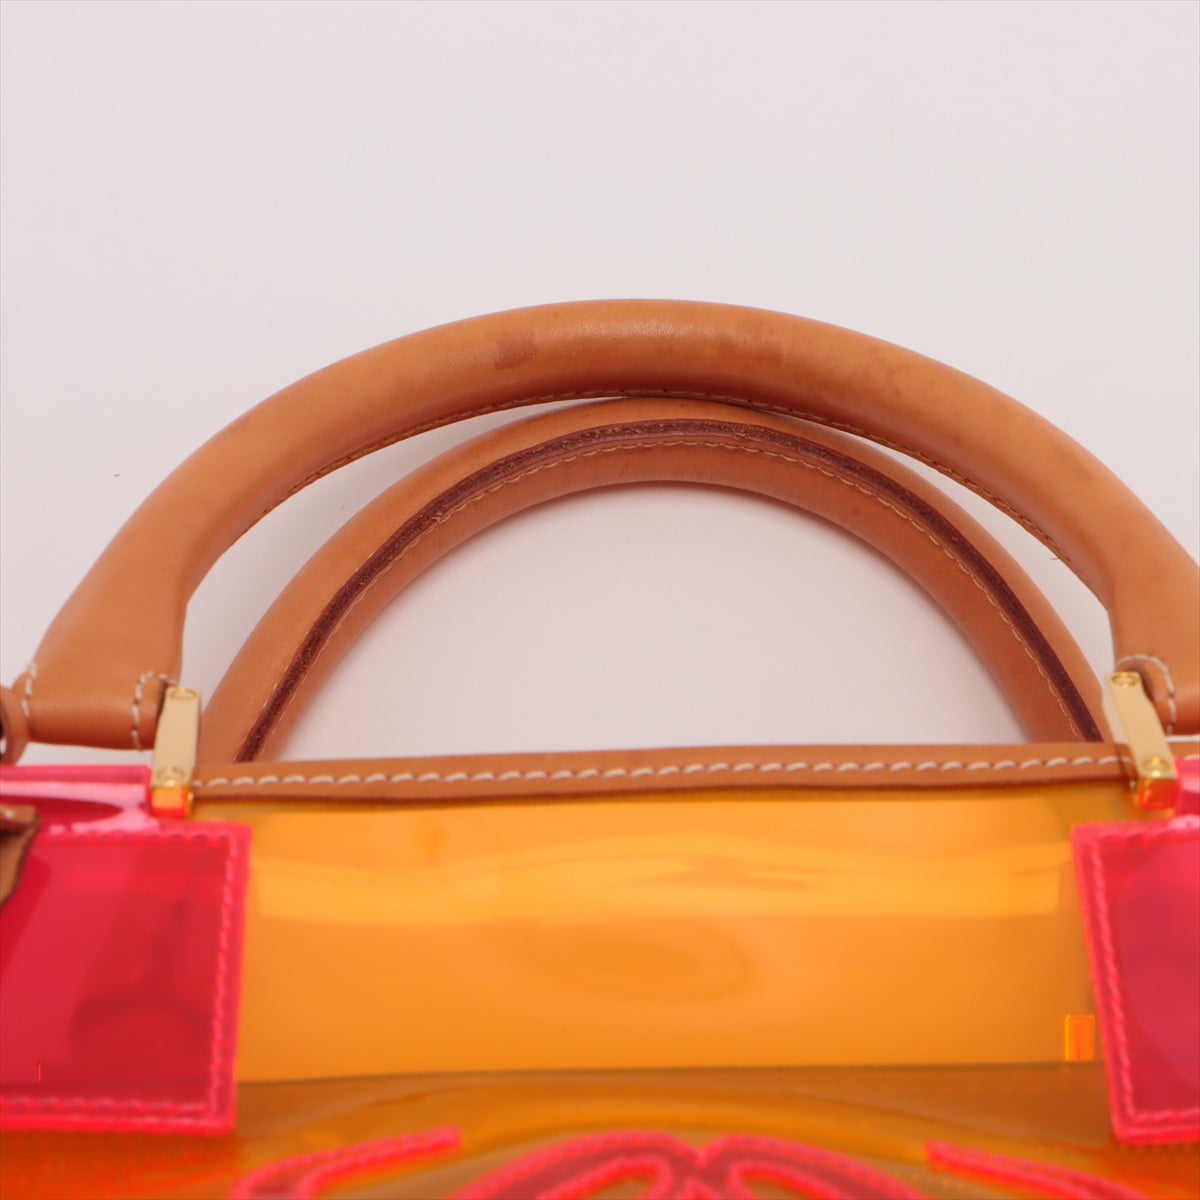 Loewe Amazon Vinyl X Leather Handbag Orange Luggage